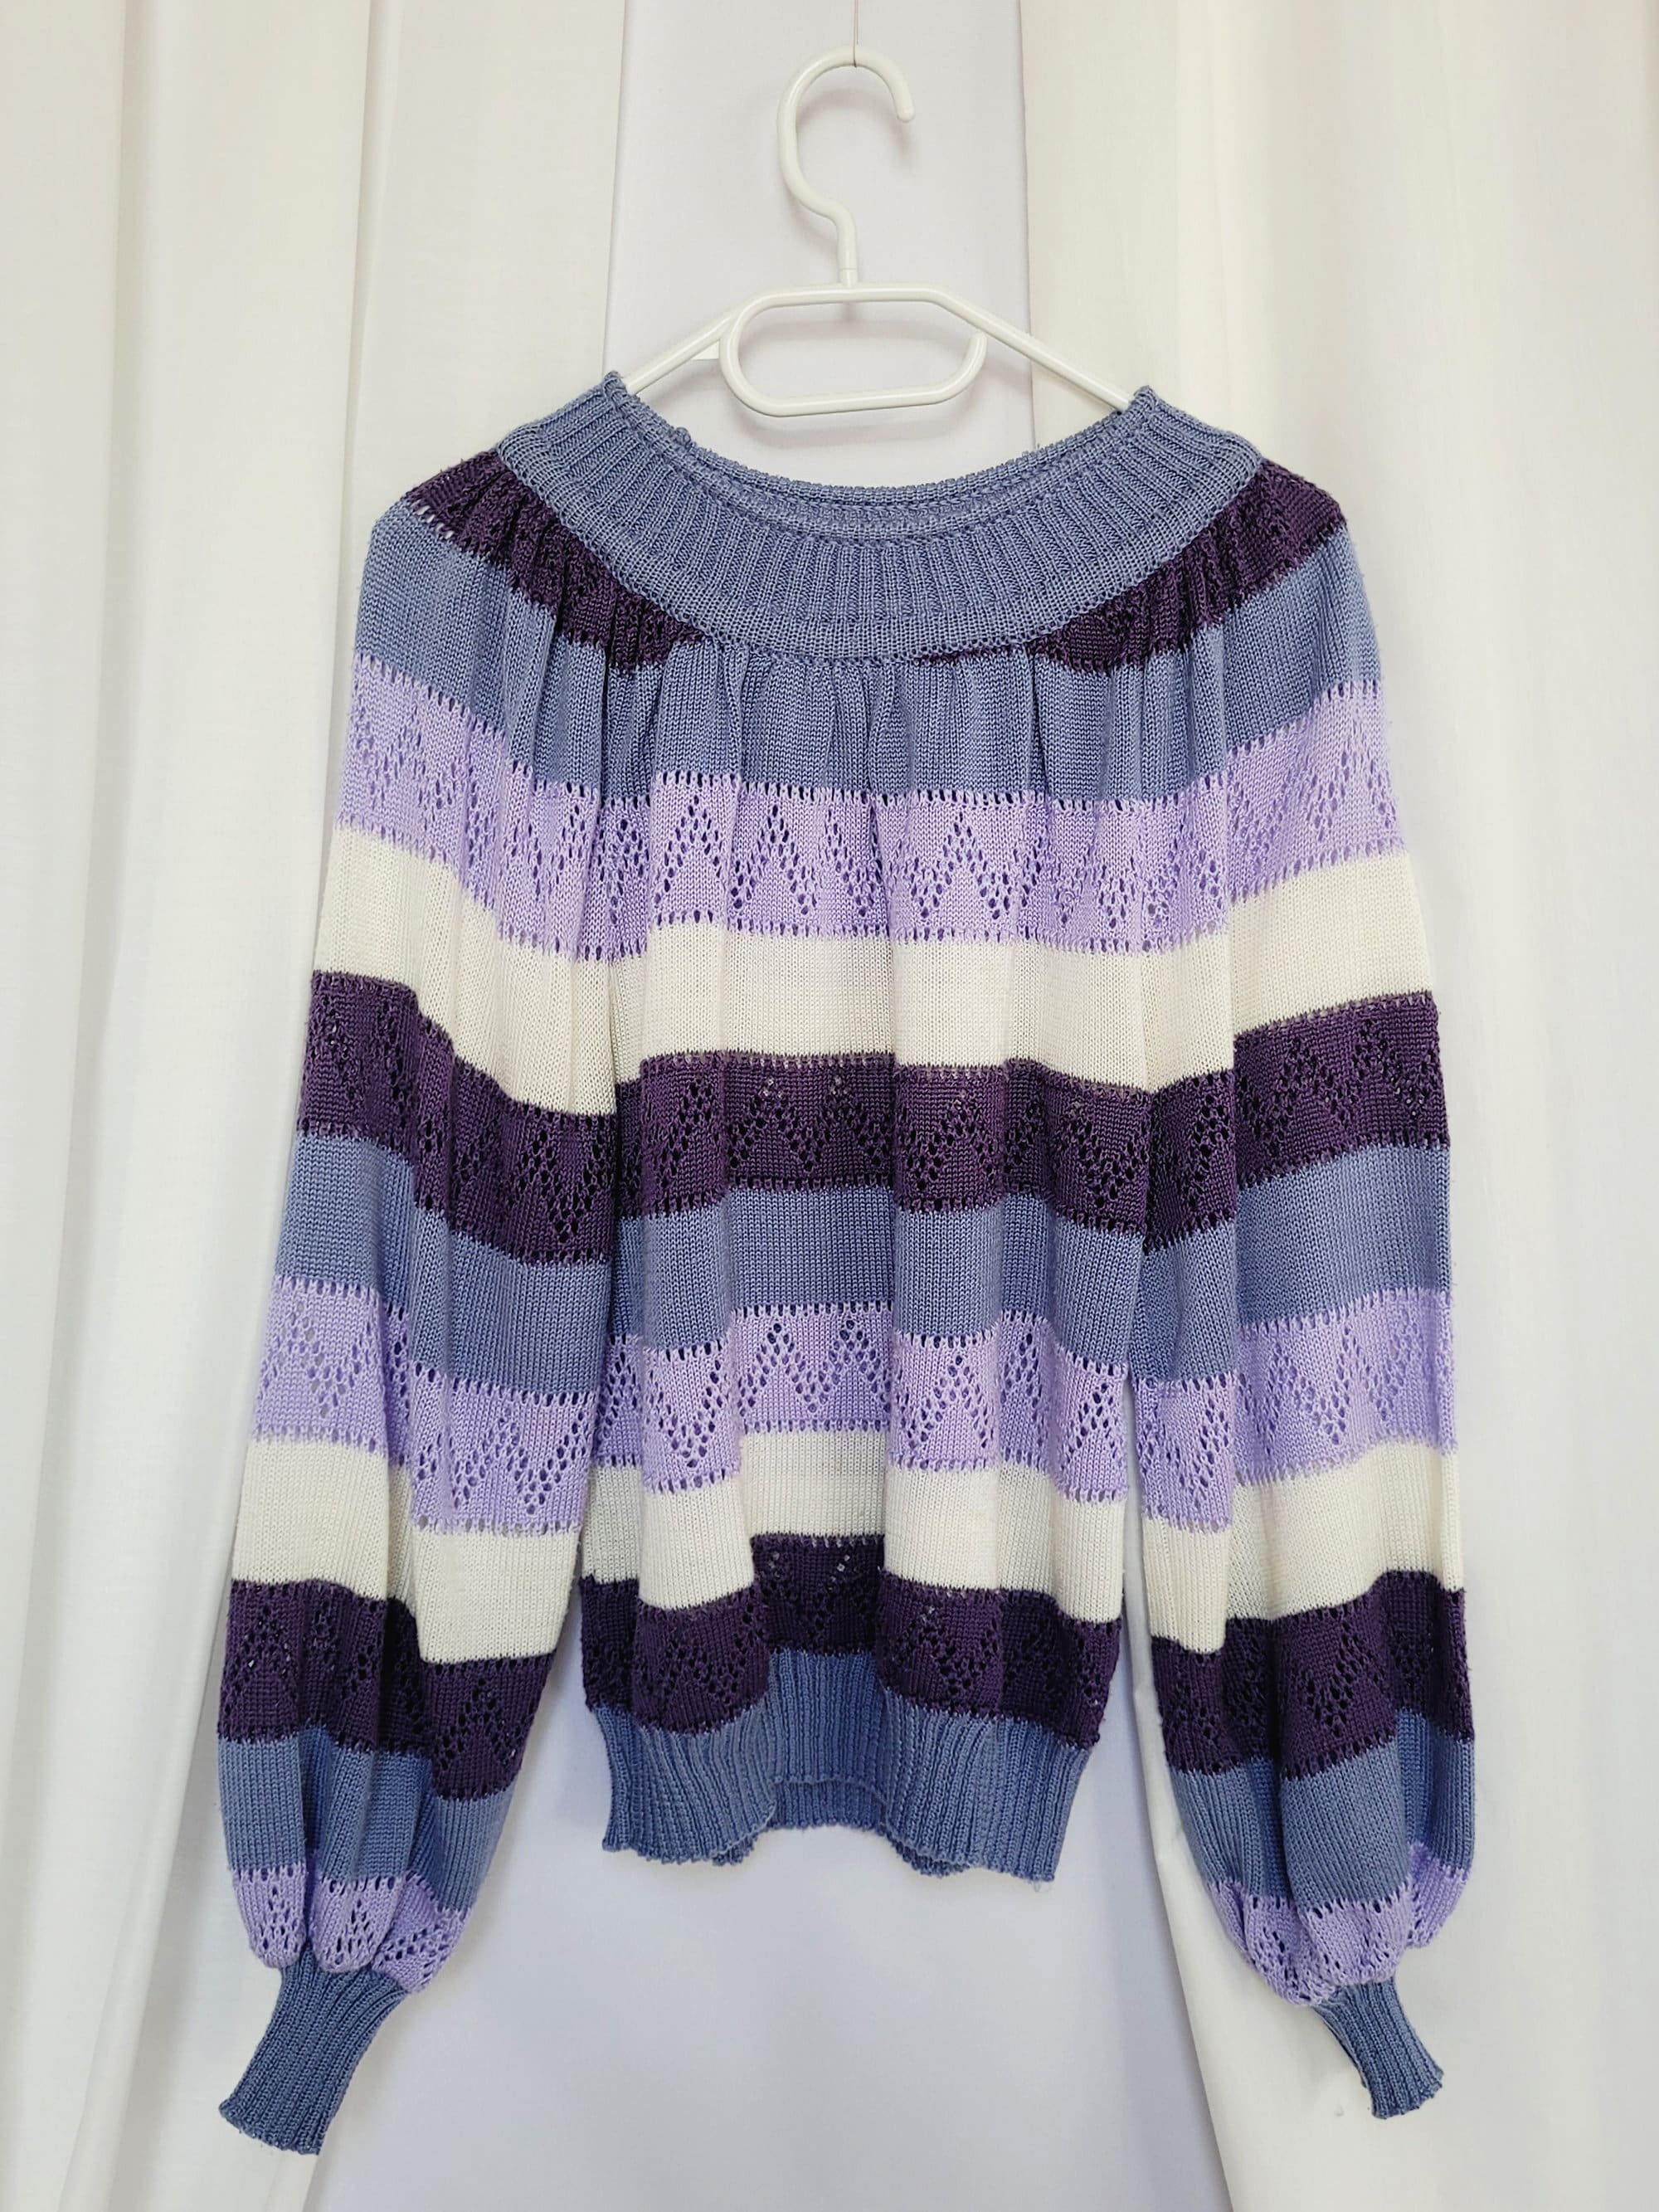 80s striped knit preppy minimalist jumper top